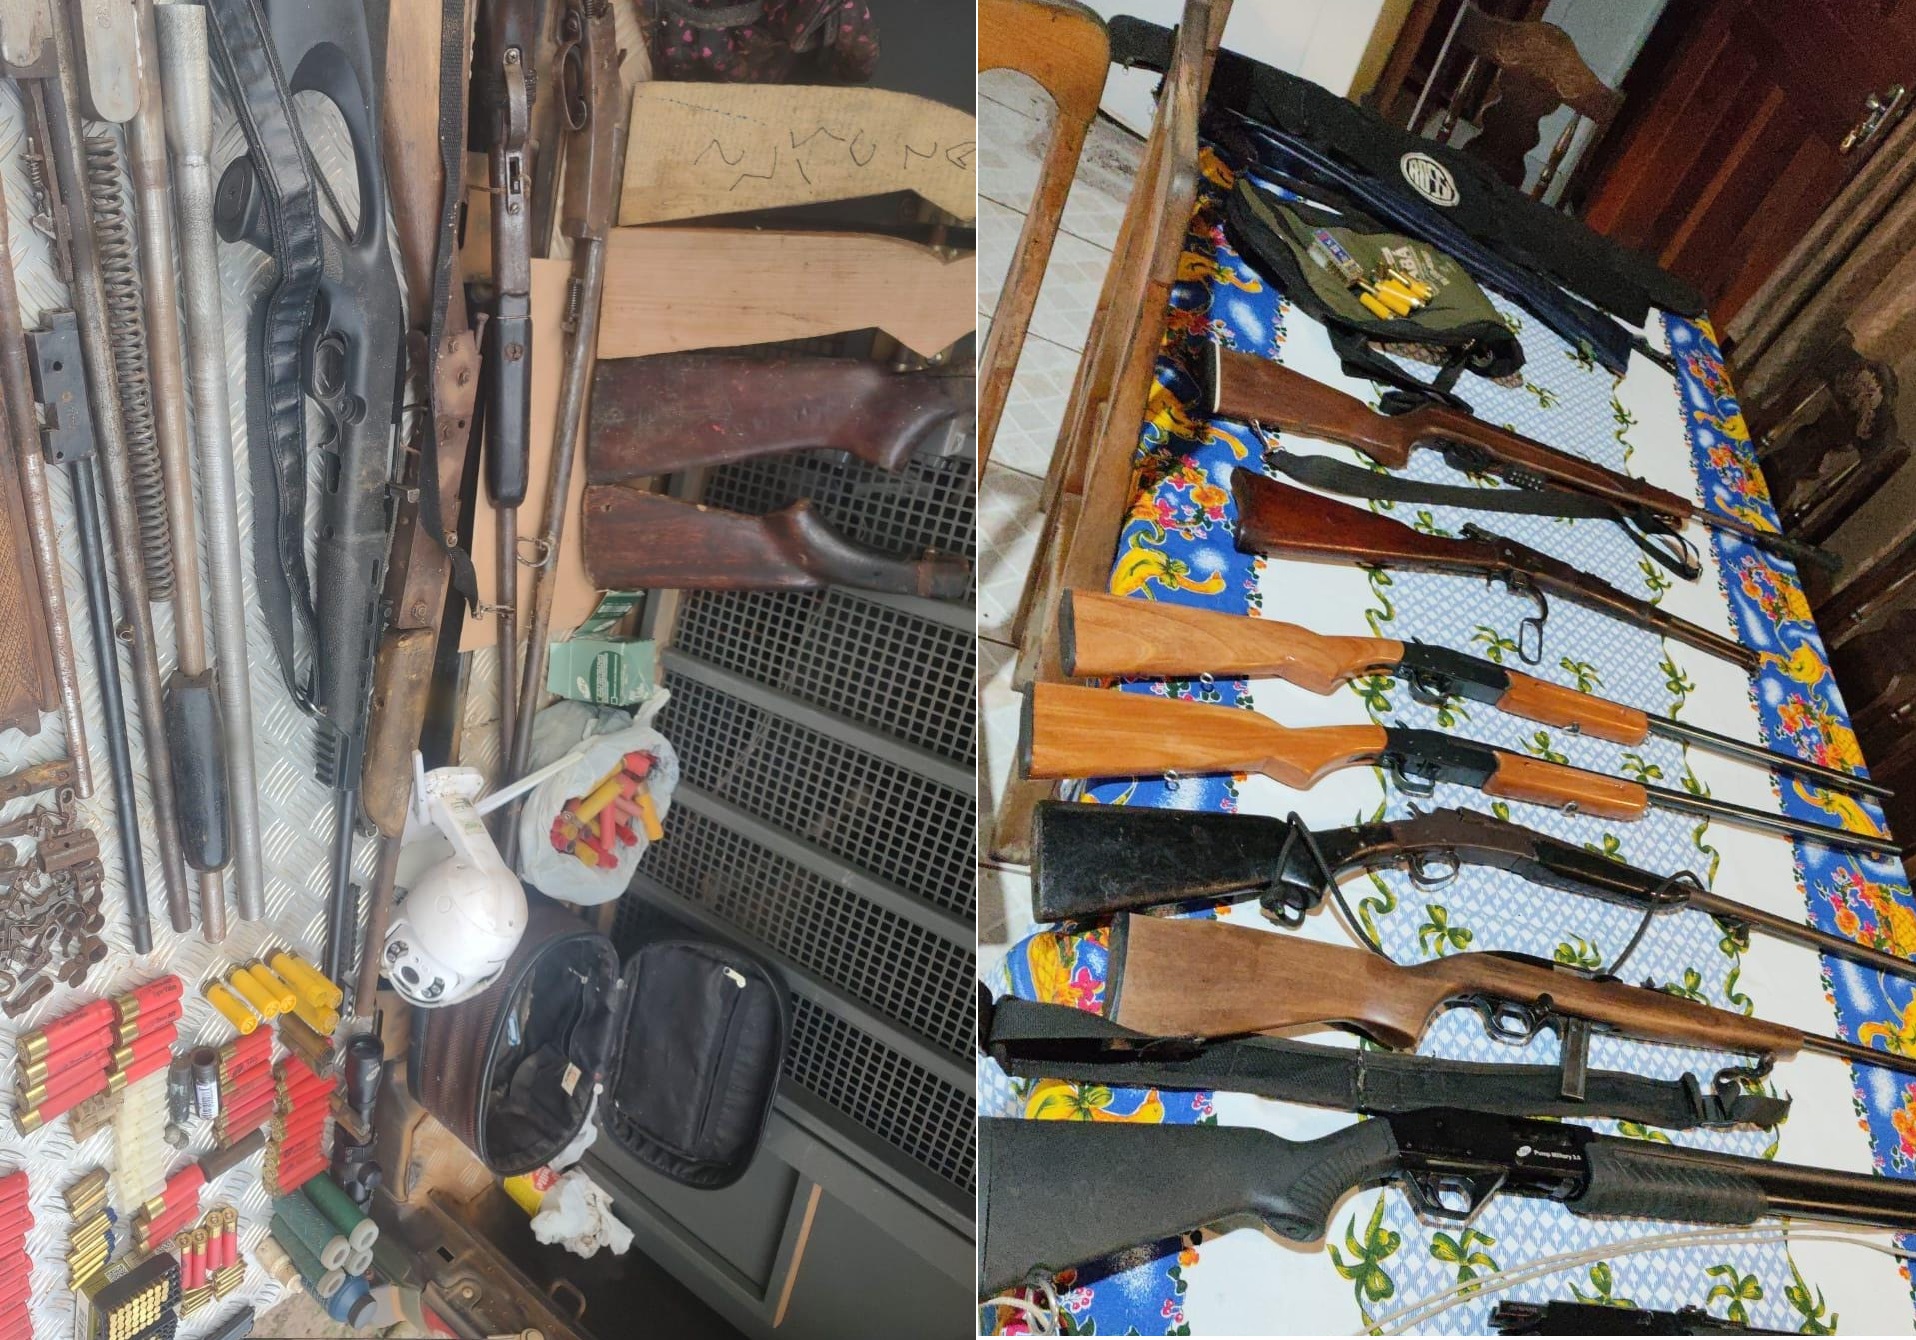 Forças de segurança desmantelam fábrica clandestina de armas em Vilhena